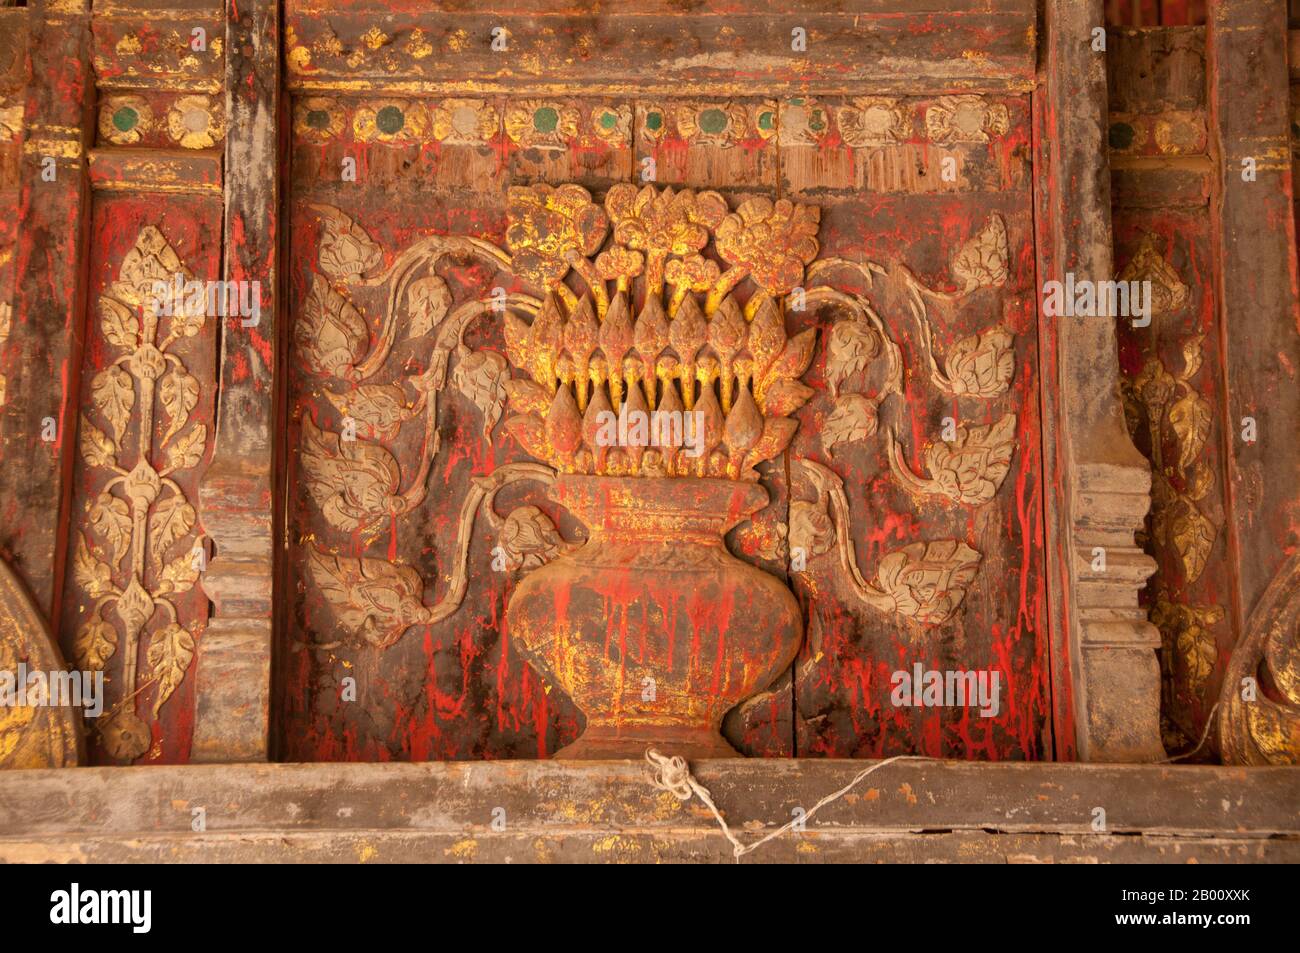 Thaïlande: Décoration de pilier dans le principal Viharn Luang, Wat Phra que Lampang Luang, nord de la Thaïlande. Wat Phra que Lampang Luang a été construit au XVe siècle et est un temple en bois de style Lanna trouvé dans le district de Ko Kha de la province de Lampang. Les peintures murales que l'on trouve dans le viharn principal représentent une variété d'événements, y compris des batailles, la vie des palais et d'autres événements quotidiens. Banque D'Images